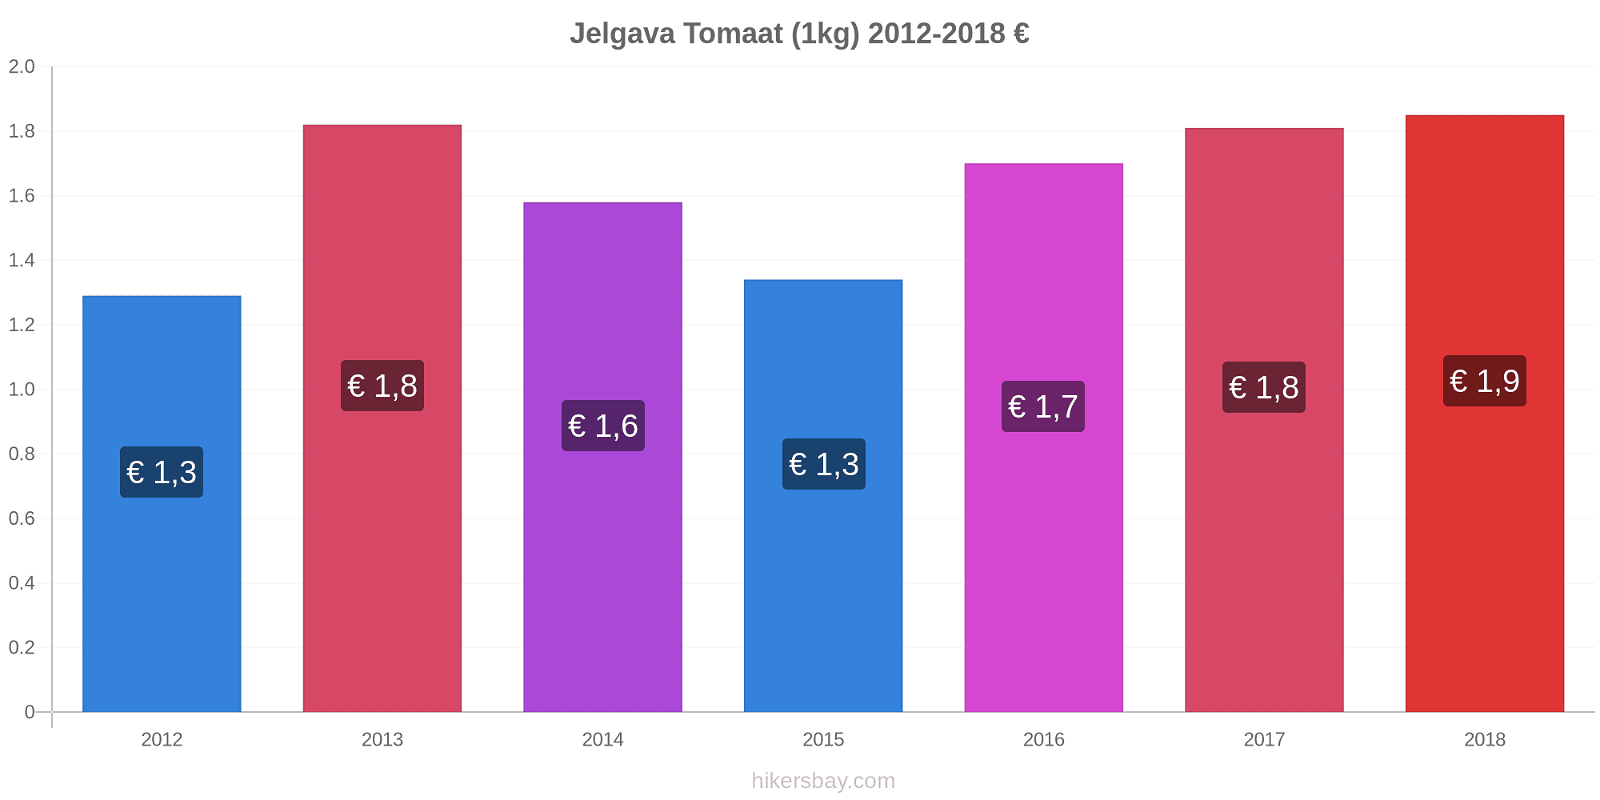 Jelgava prijswijzigingen Tomaat (1kg) hikersbay.com